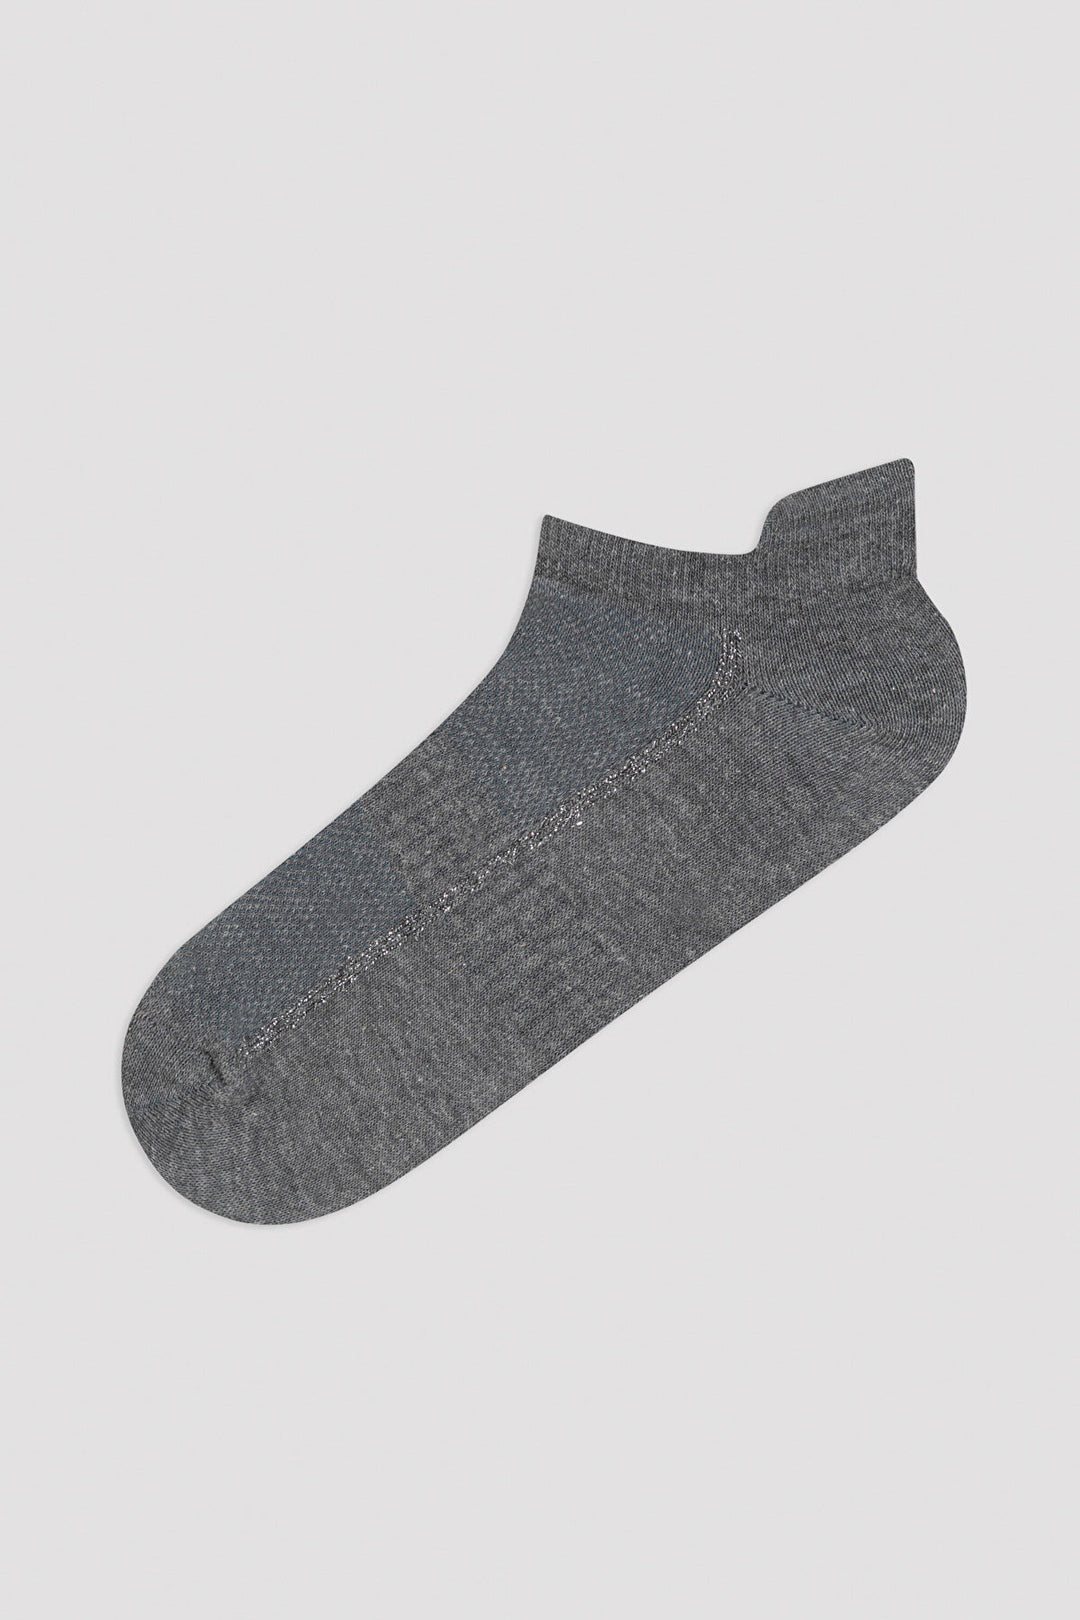 Black - Grey - White Line 3In1 Liner Socks